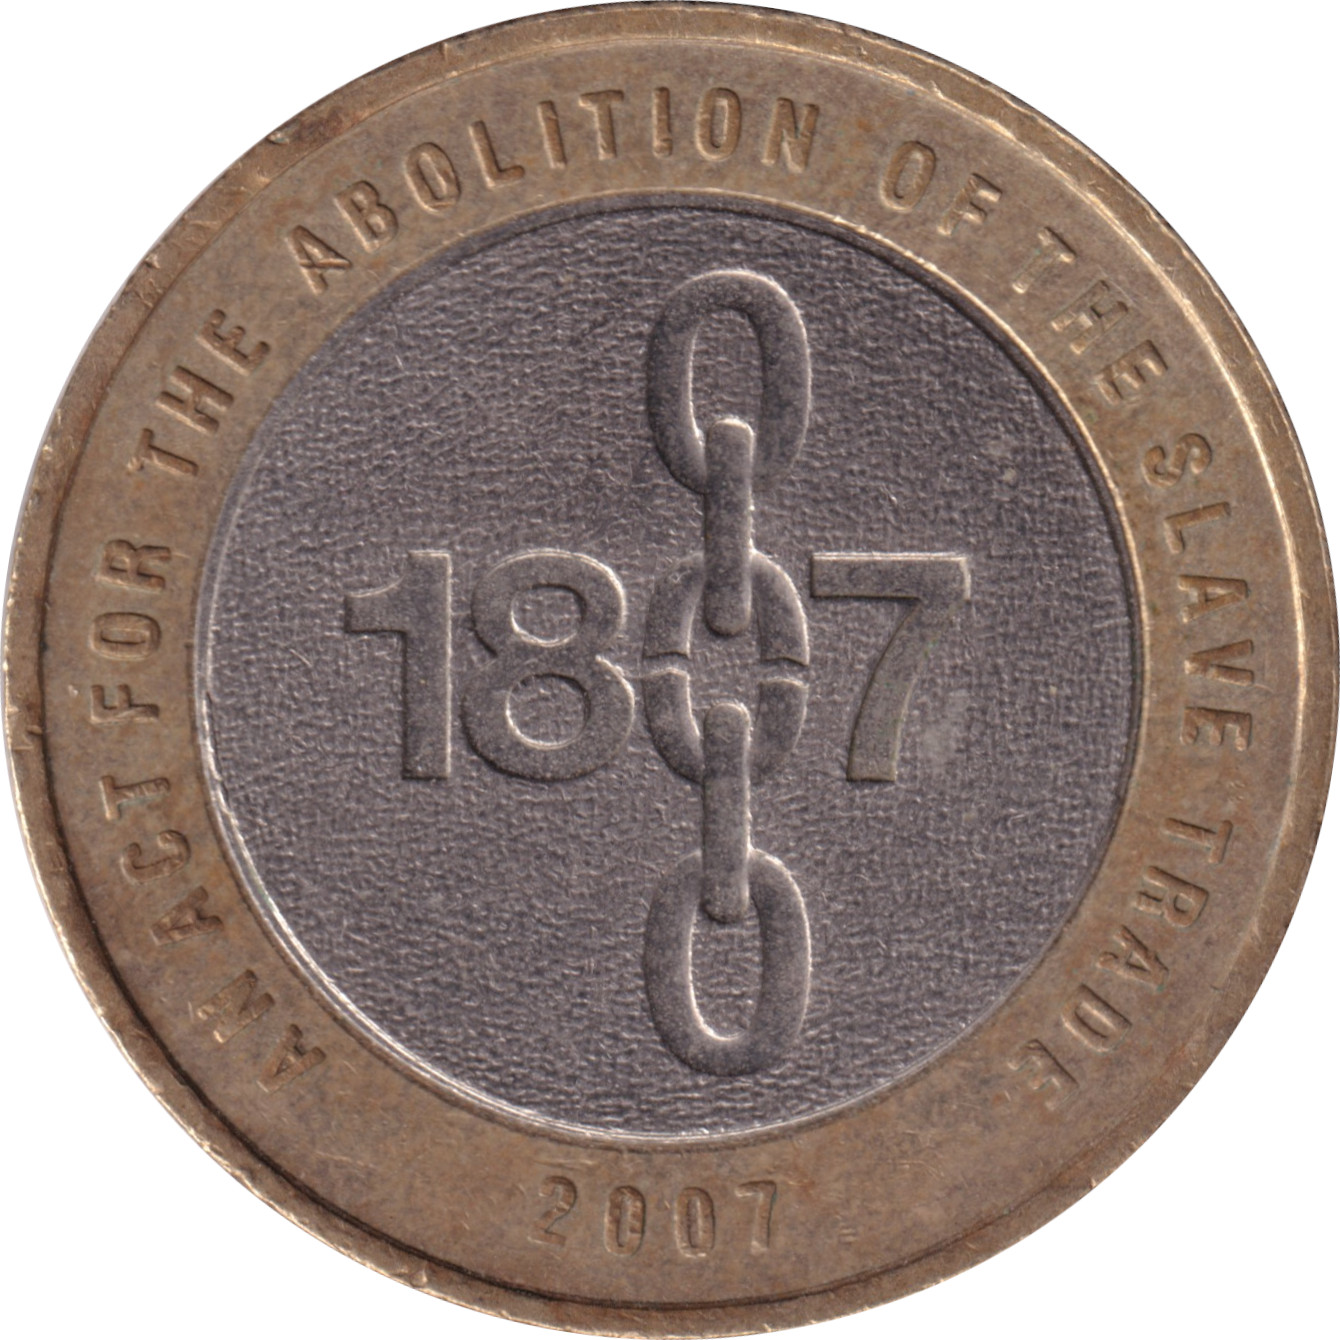 2 pound - Abolition de l'esclavage - 200 ans